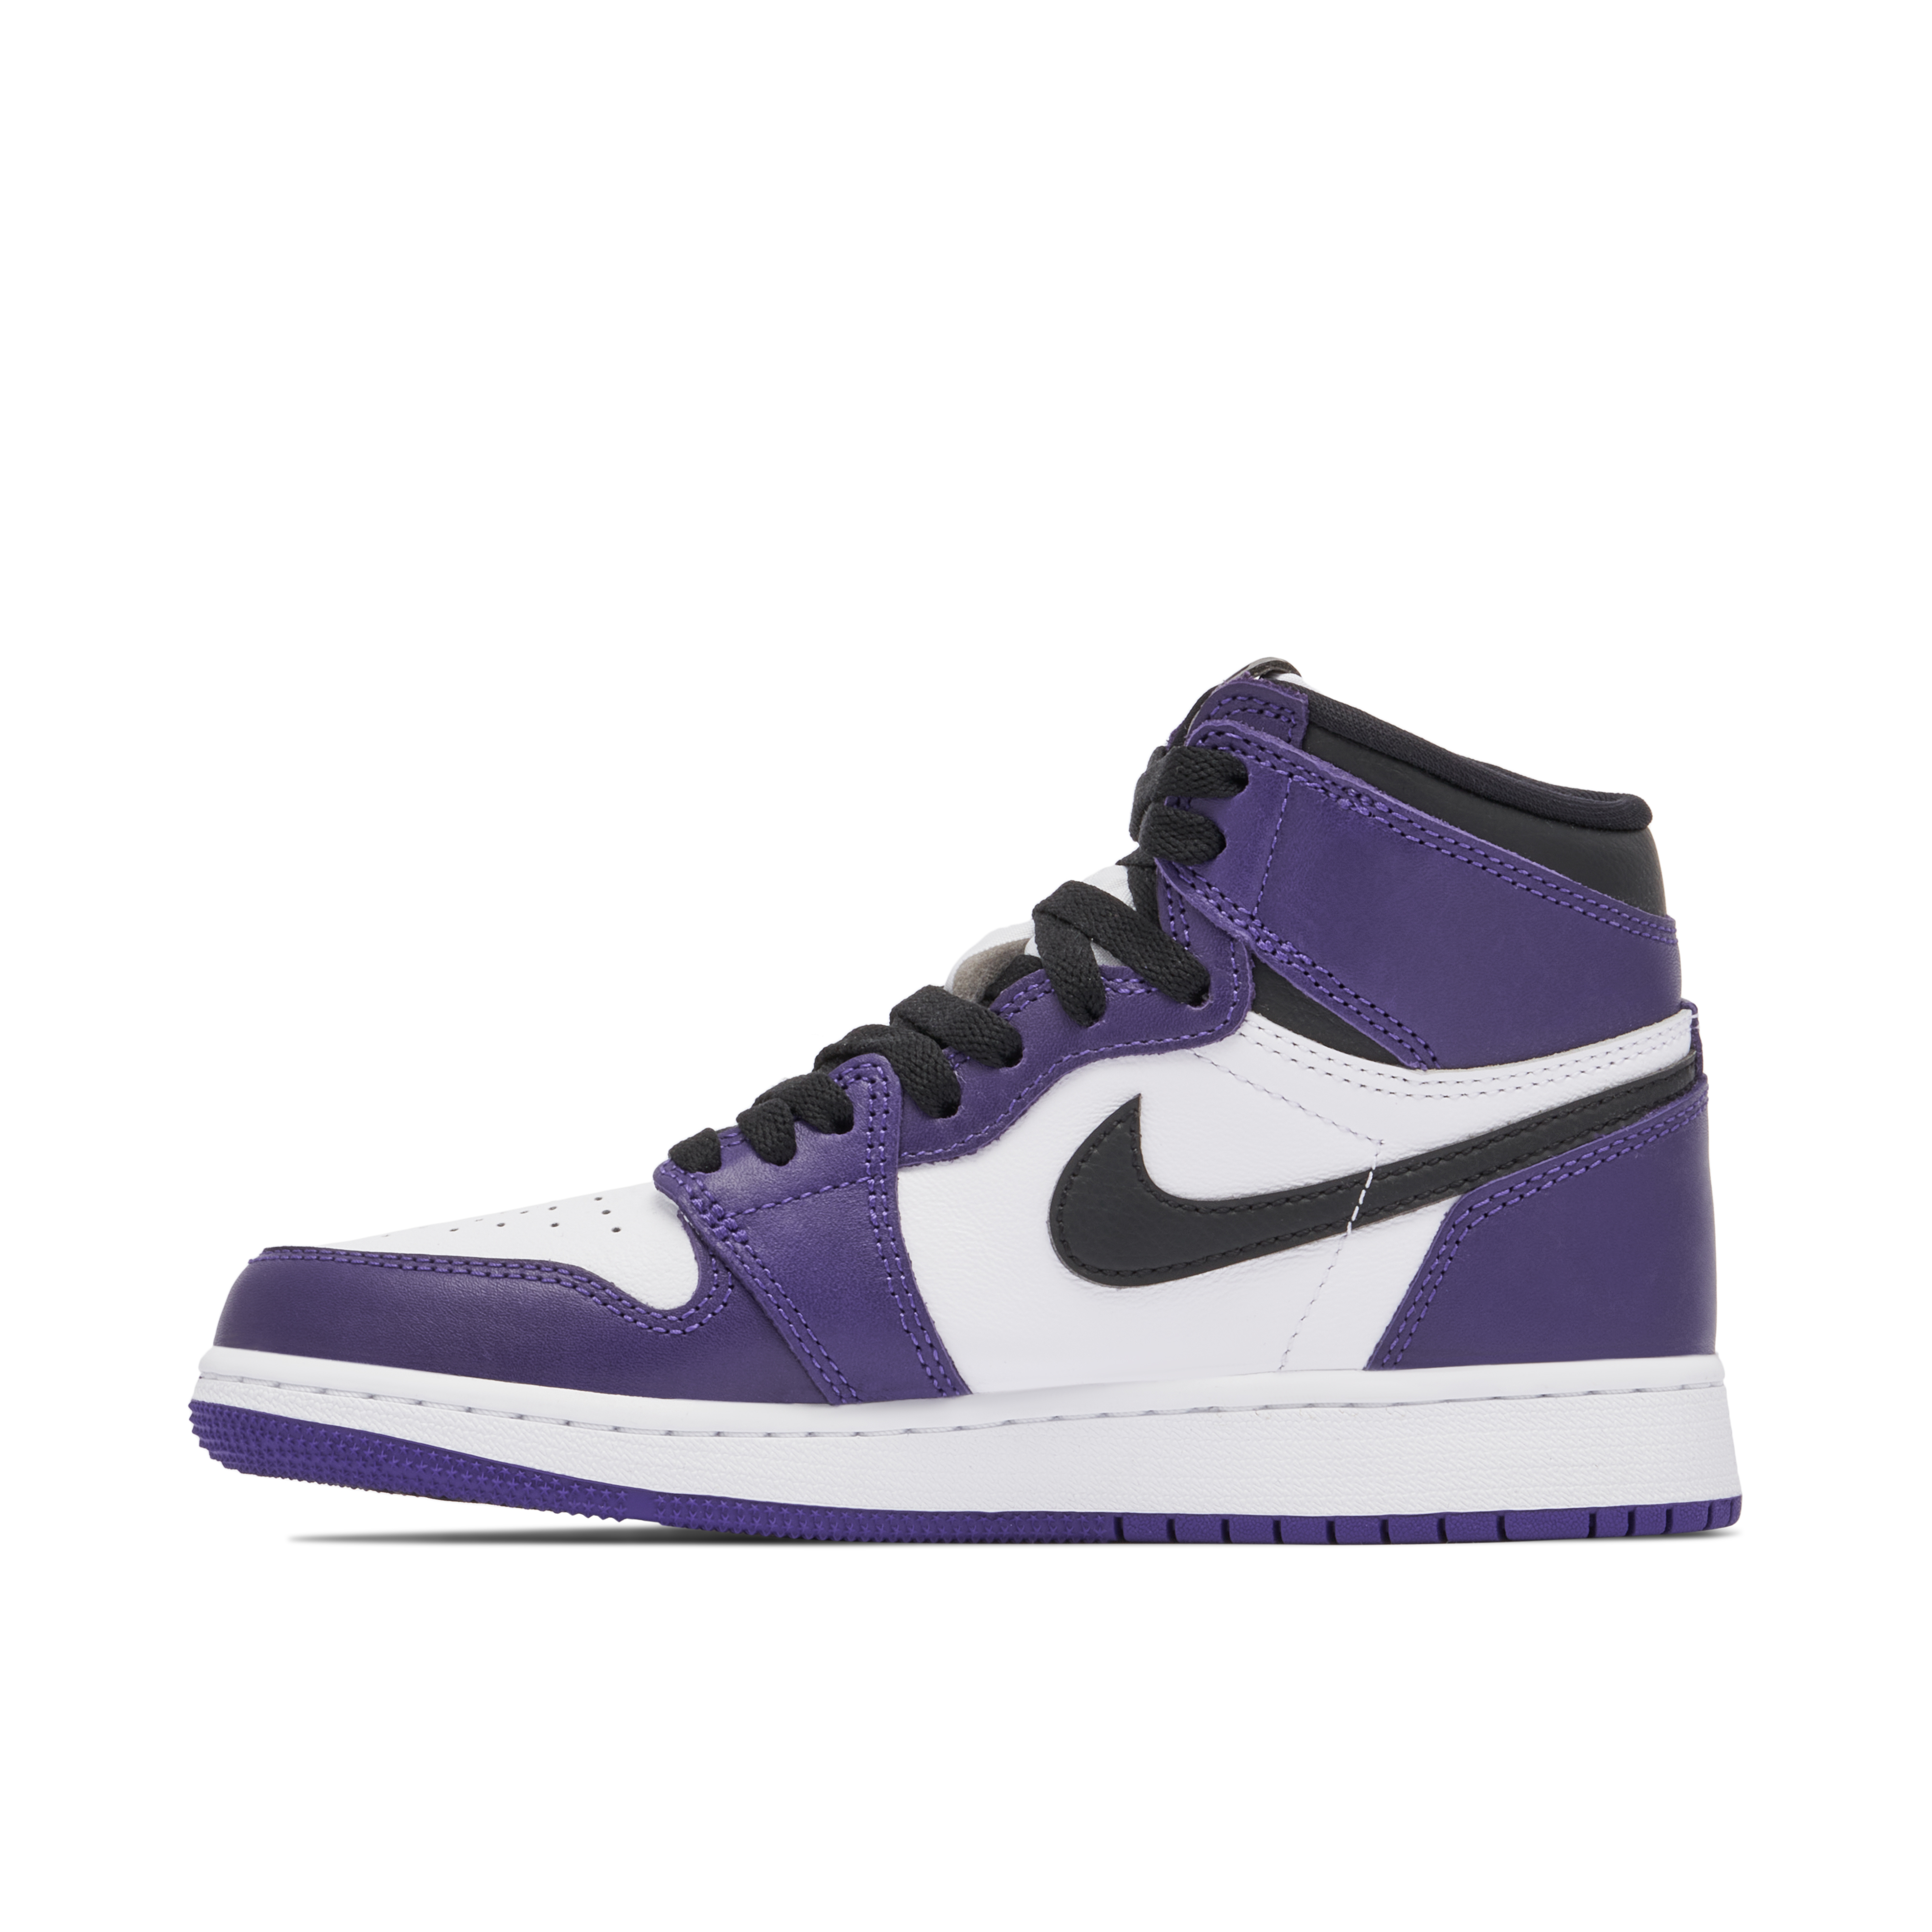 Jordan Flight Club 90”s Purple / New / Size 11.5